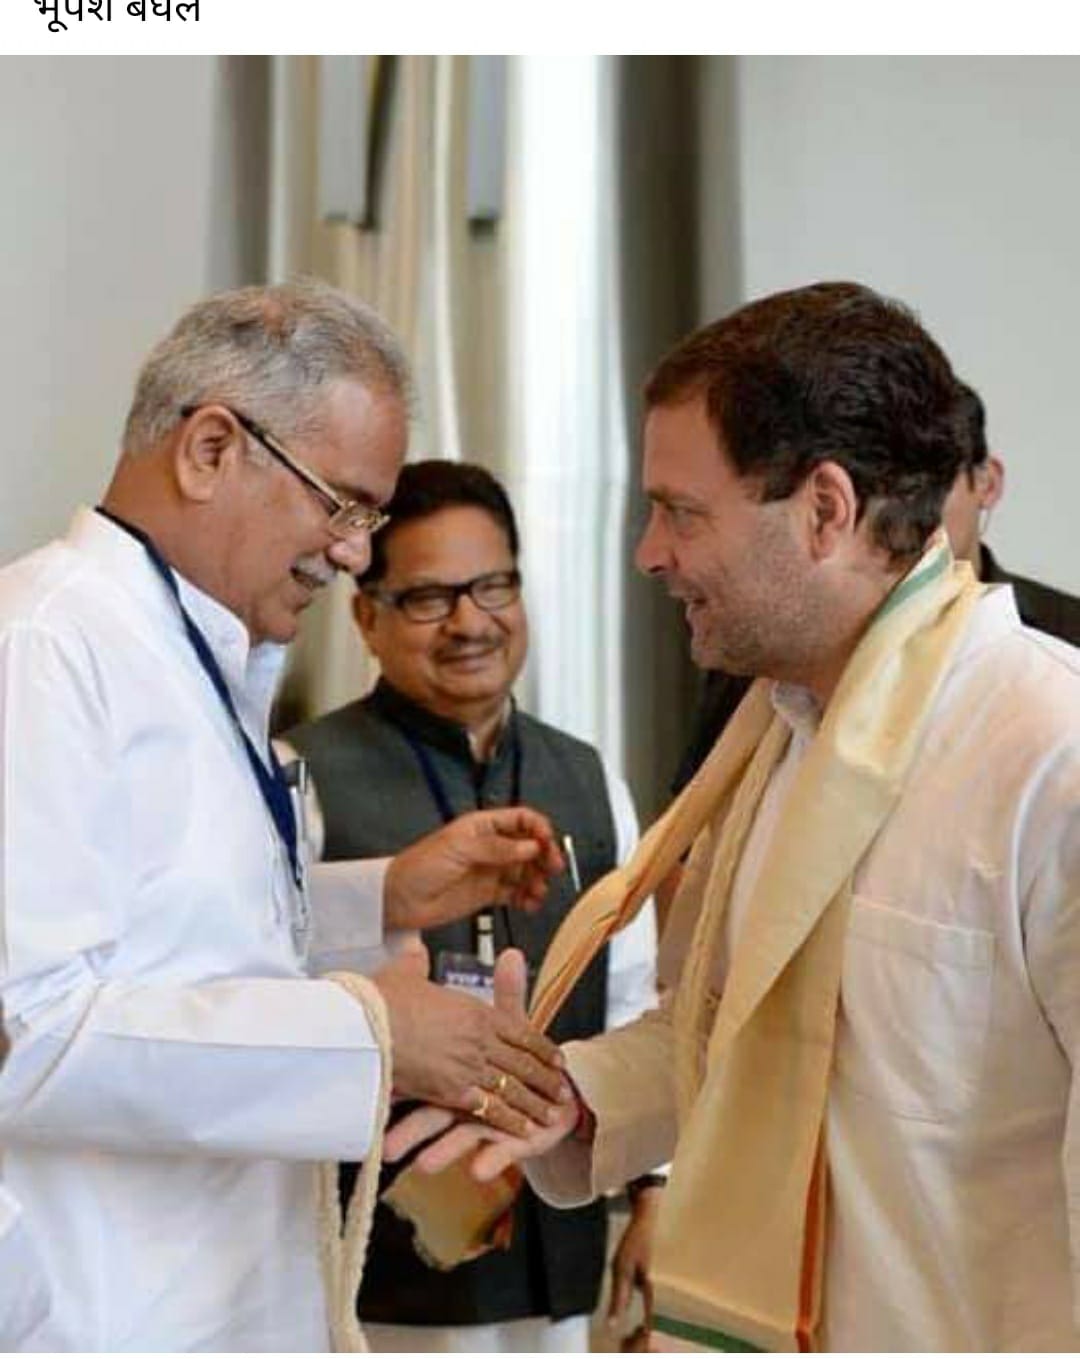 BIG NEWS : मुख्यमंत्री भूपेश बघेल ही रहेंगे प्रदेश के मुखियां, दिया यह बड़ा बयान, बताया छत्तीसगढ़ आएंगे राहुल गाँधी, इतने दिनों का होगा दौरा